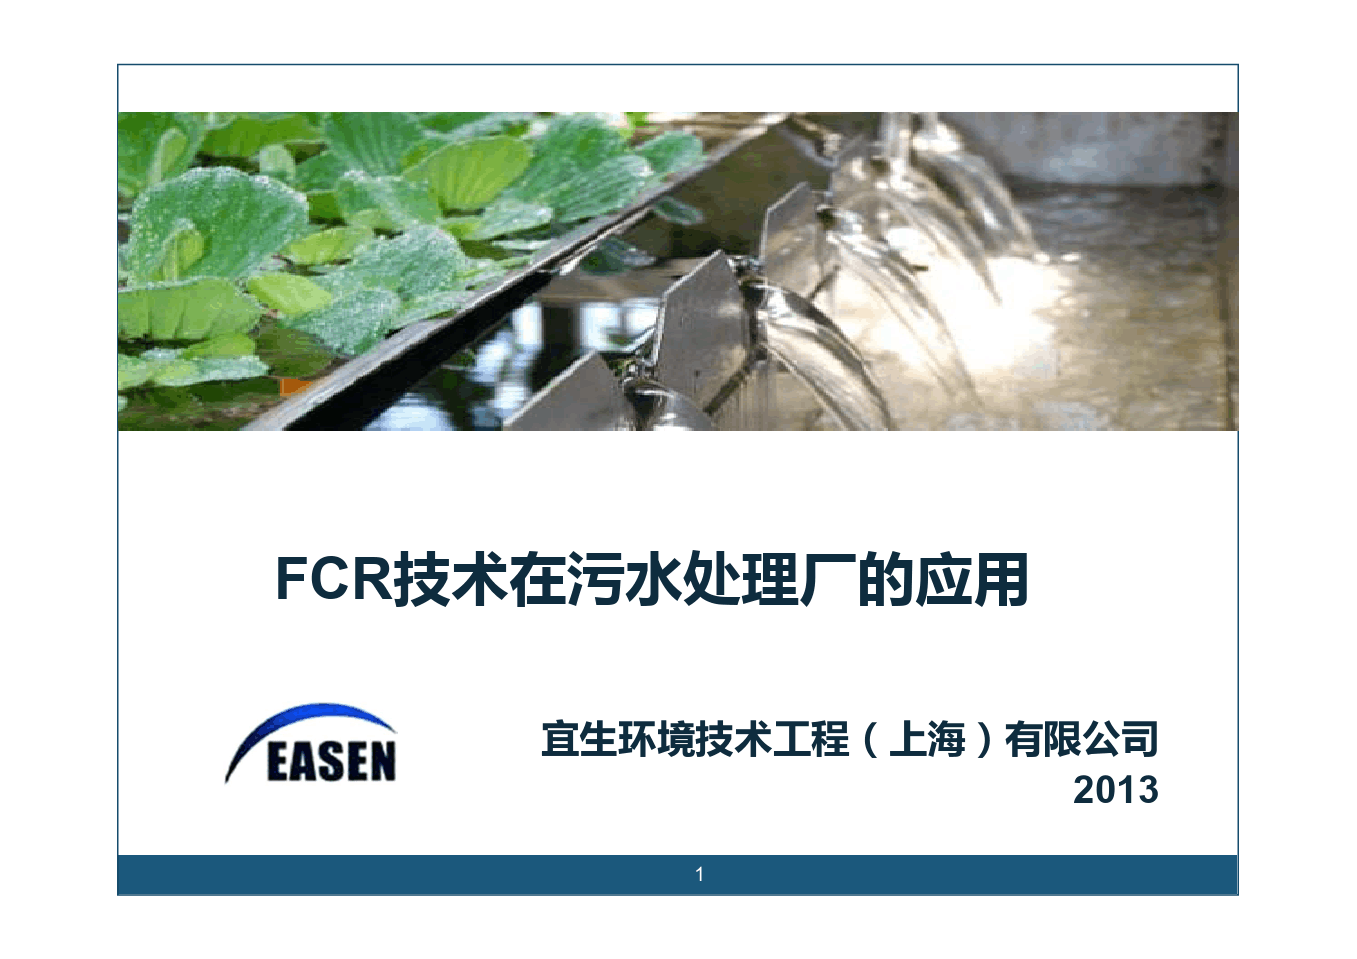 宜生FCR食物链反应器在污水处理厂的应用_中文_20130625 [兼容模式]